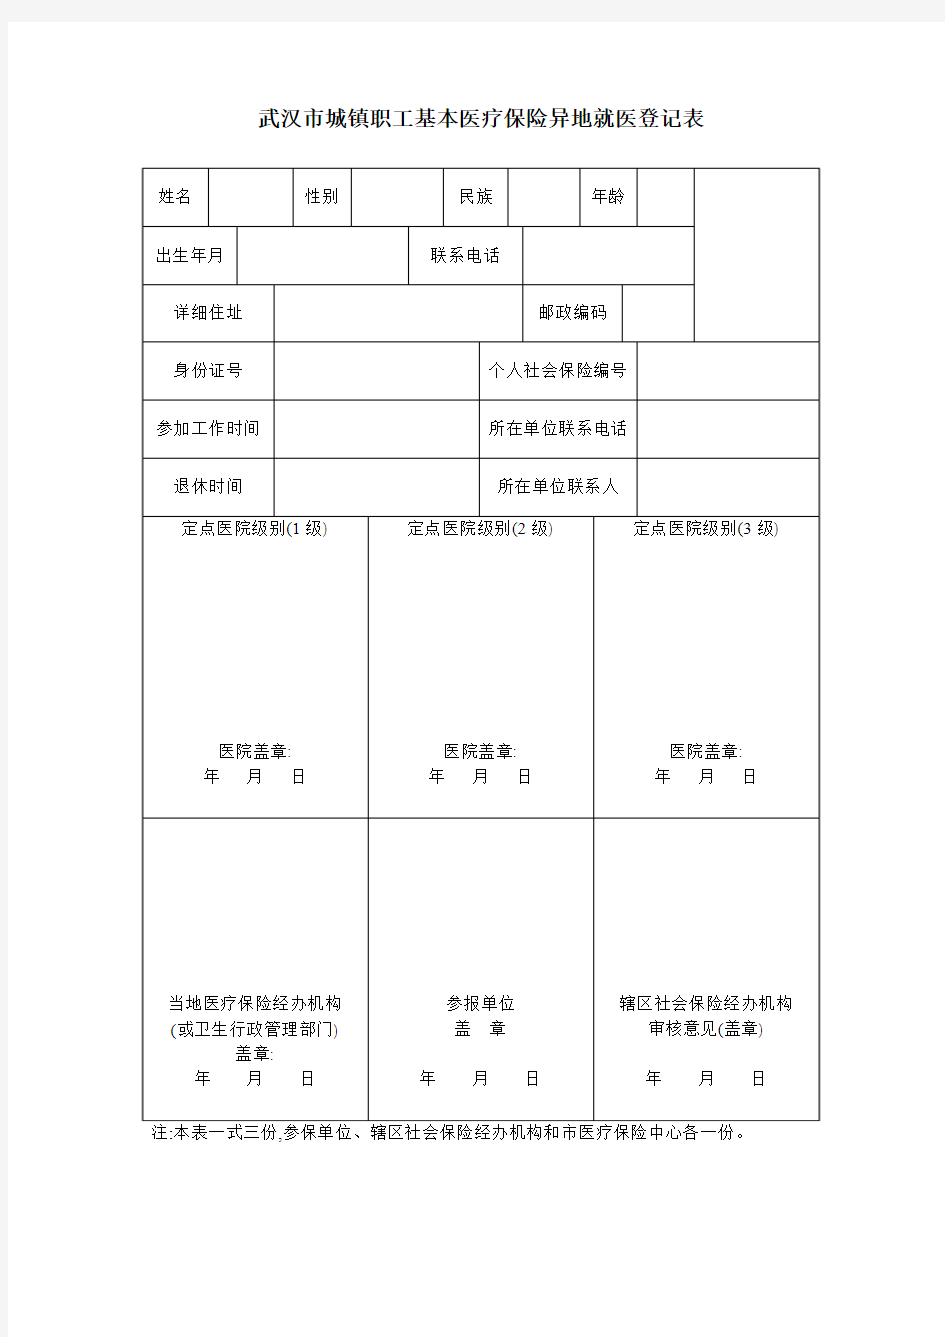 武汉市城镇职工基本医疗保险异地就医登记表